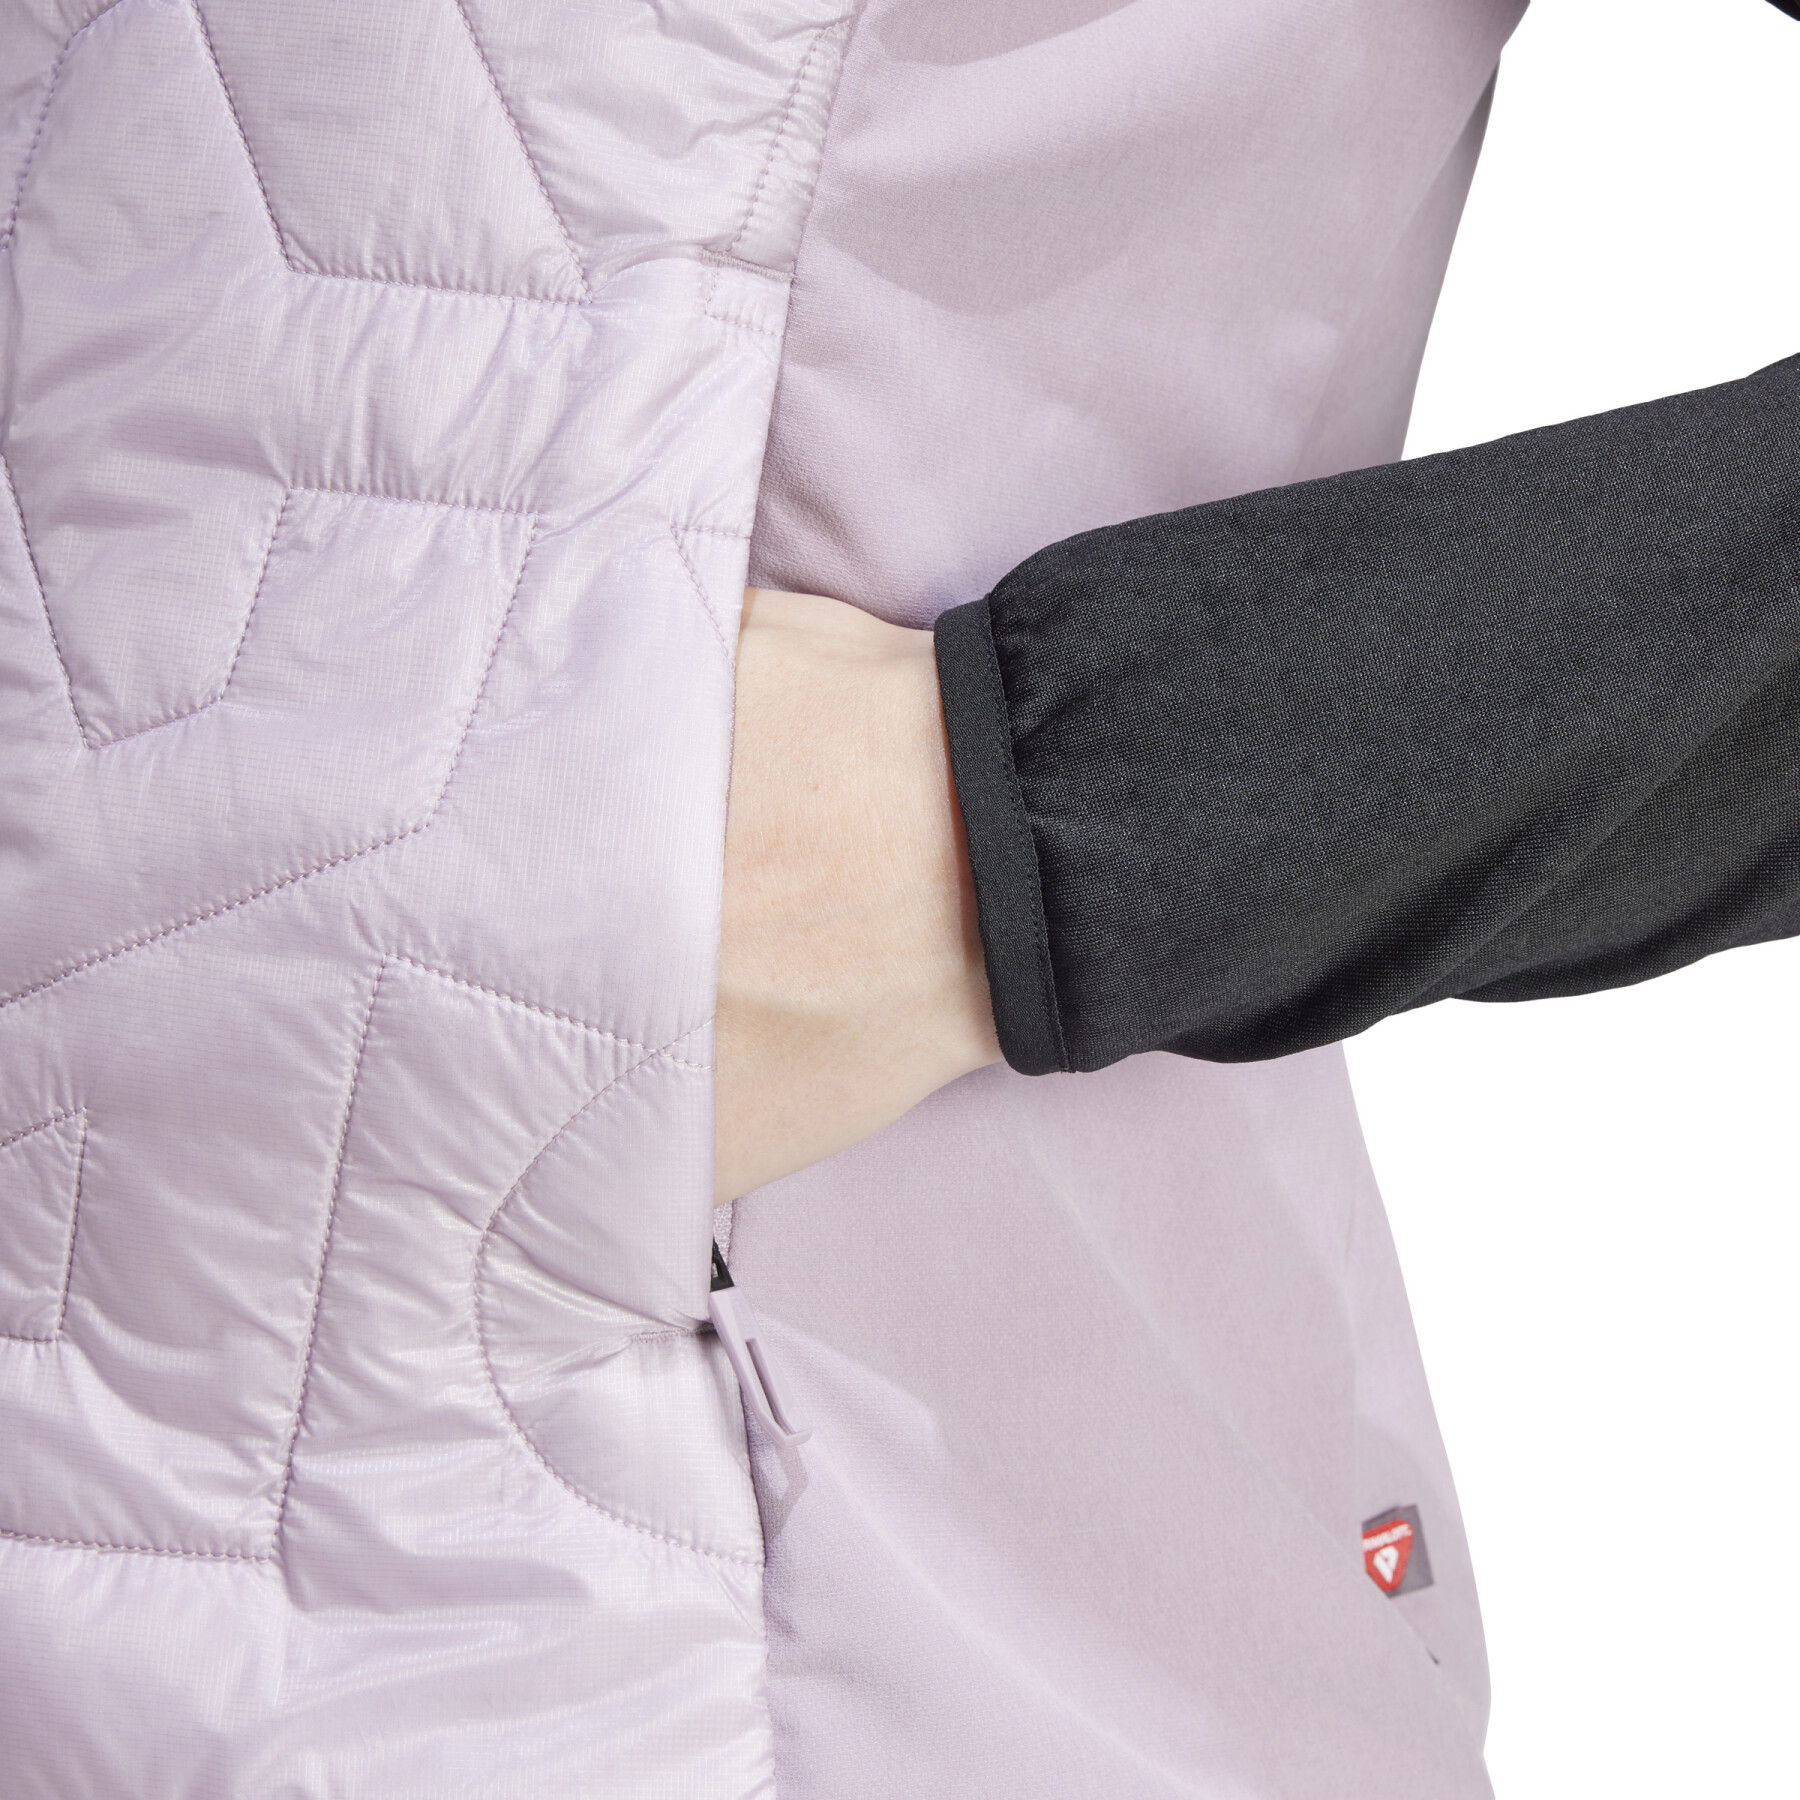 Women's sleeveless down jacket adidas Terrex Xperior Varilite PrimaLoft